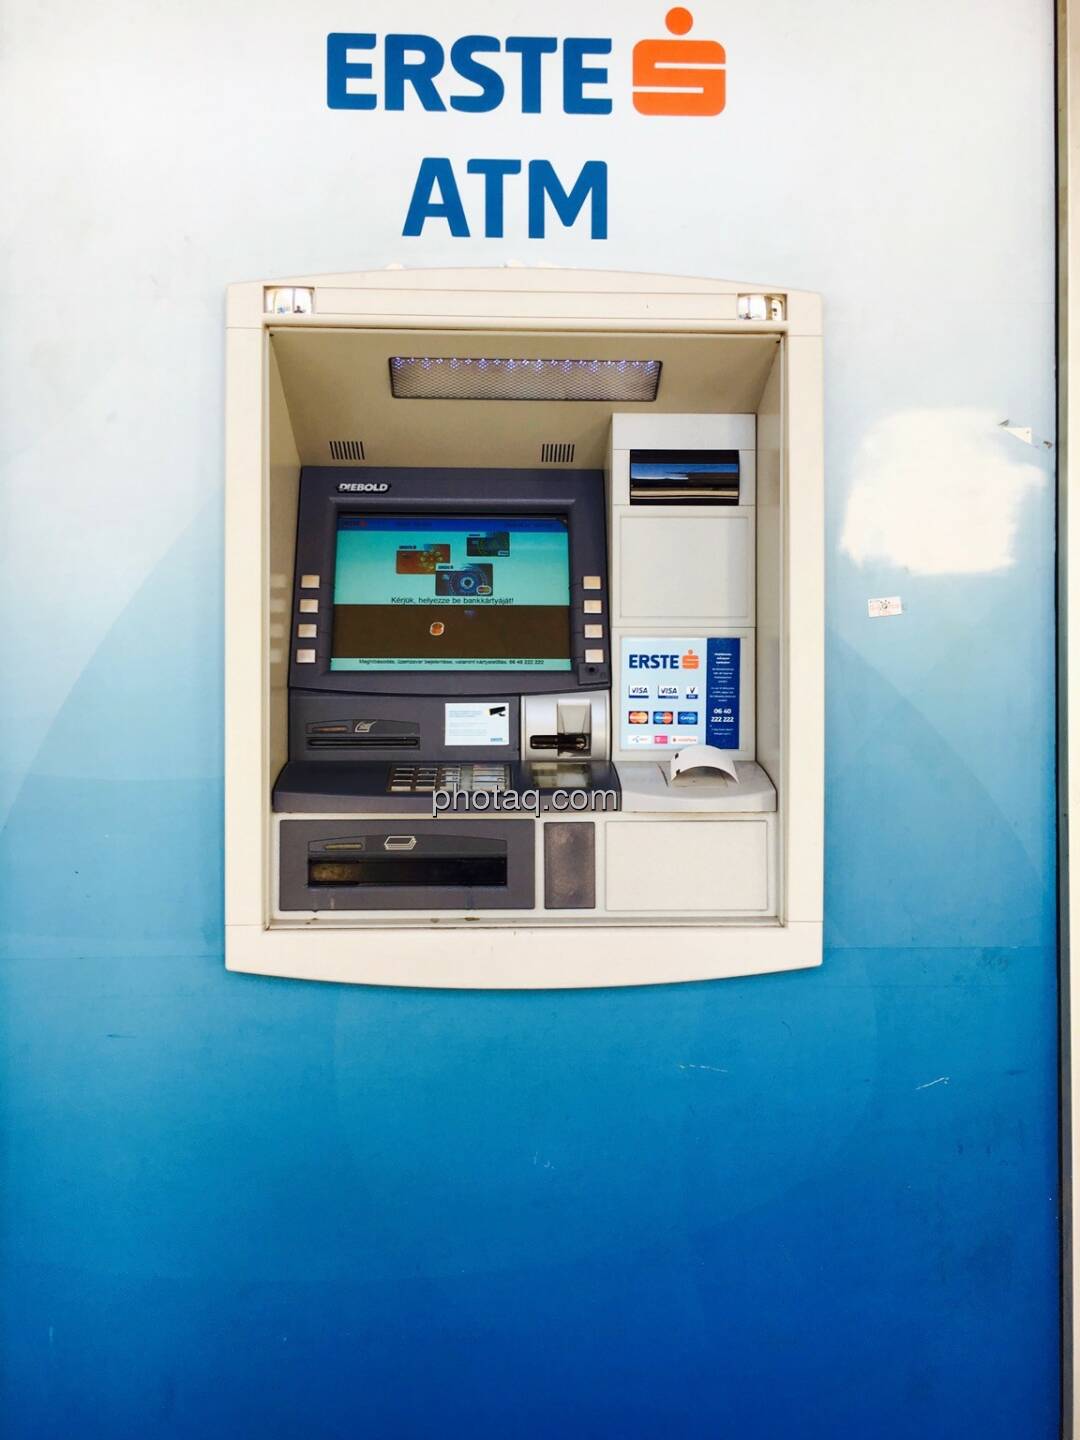 Erste ATM, Bankomat